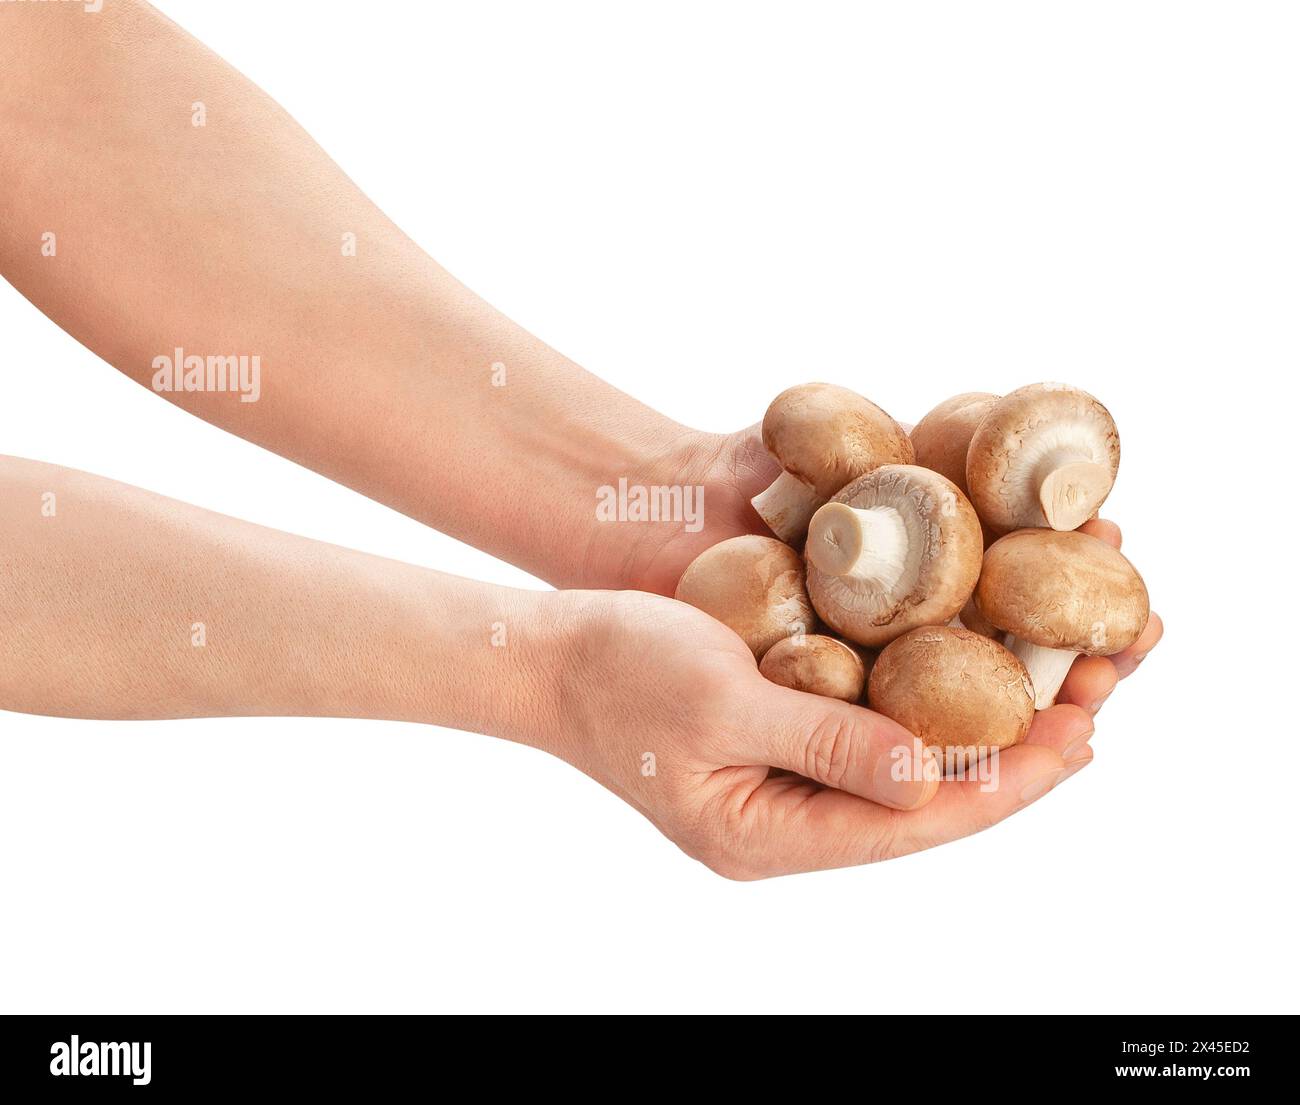 champignon brun dans le chemin de la main isolé sur blanc Banque D'Images